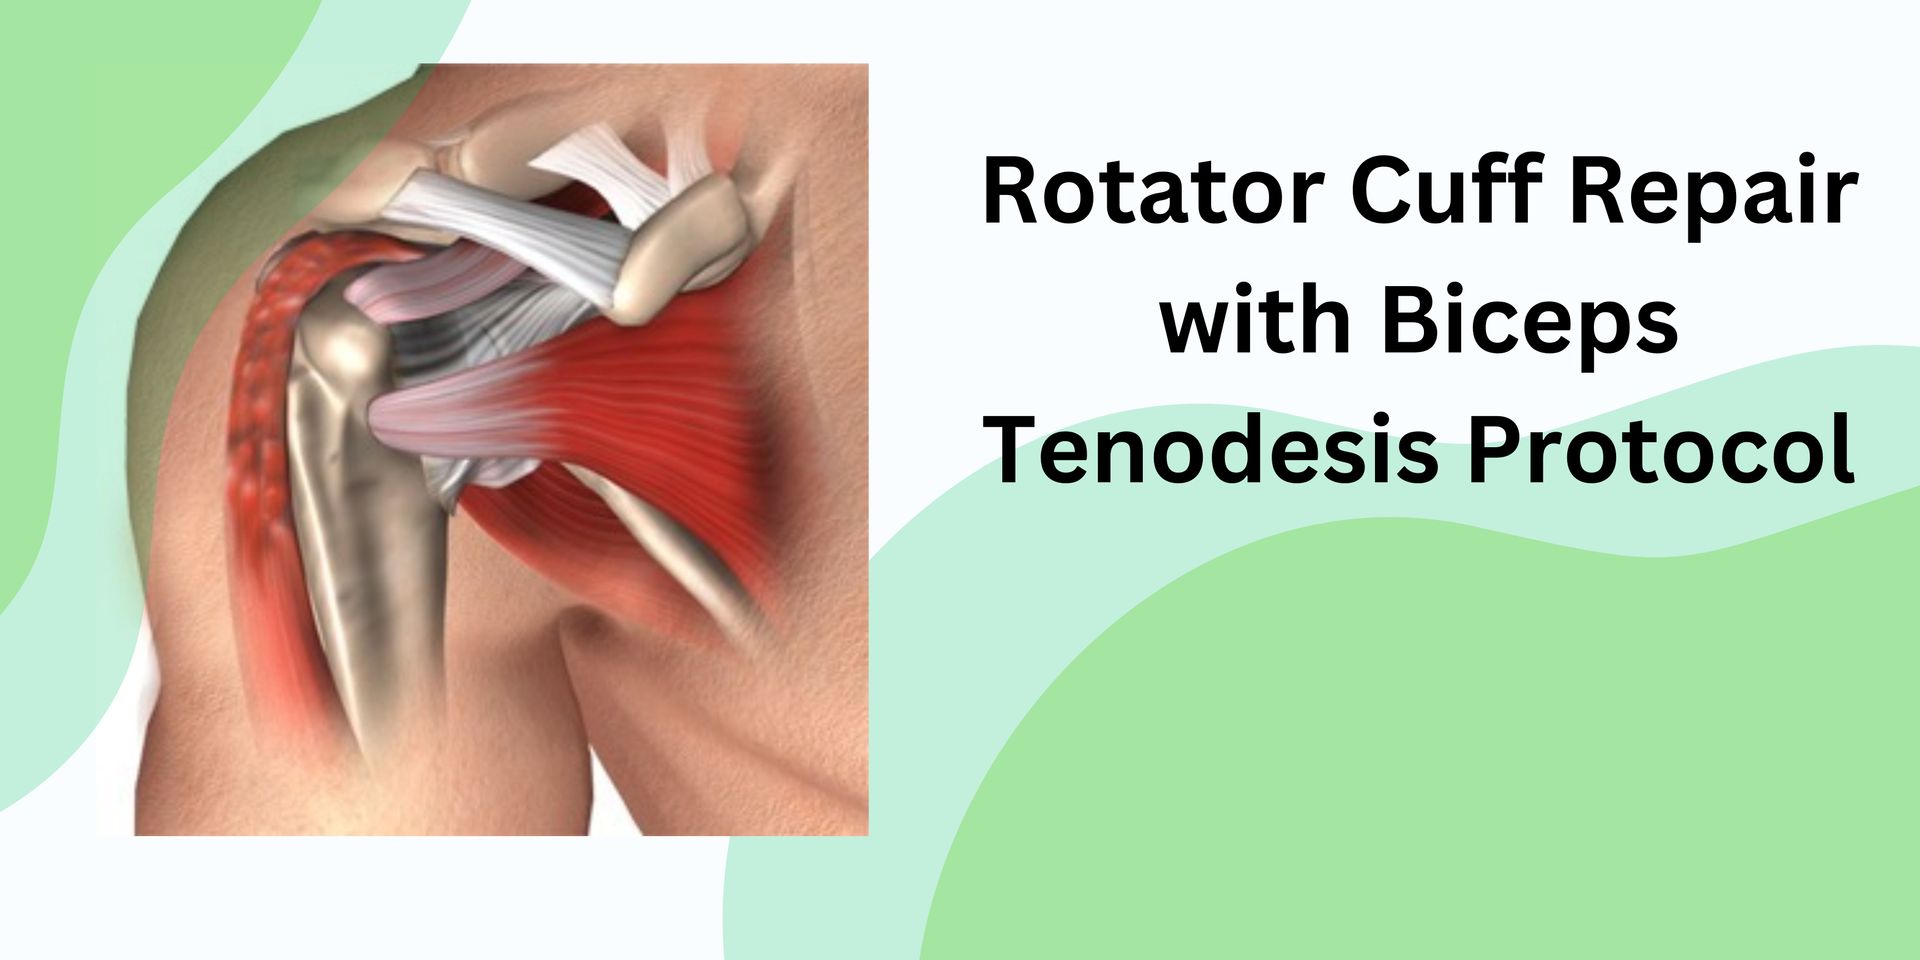 Rotator Cuff Repair & Biceps Tenodesis